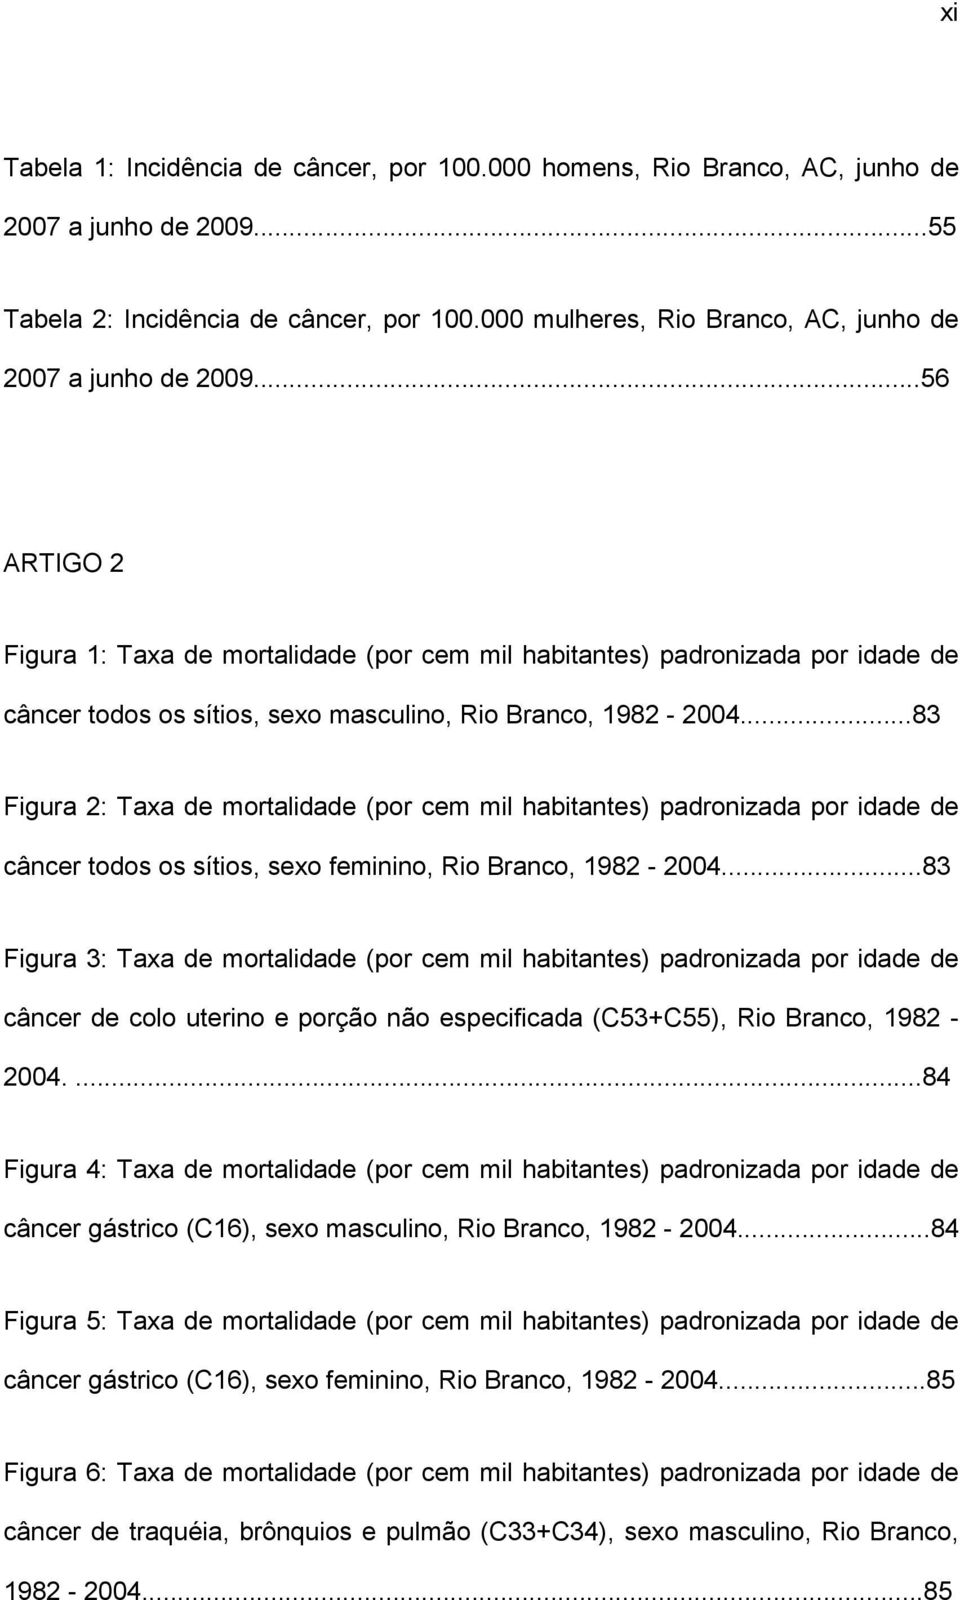 ..56 ARTIGO 2 Figura 1: Taxa de mortalidade (por cem mil habitantes) padronizada por idade de câncer todos os sítios, sexo masculino, Rio Branco, 1982-2004.